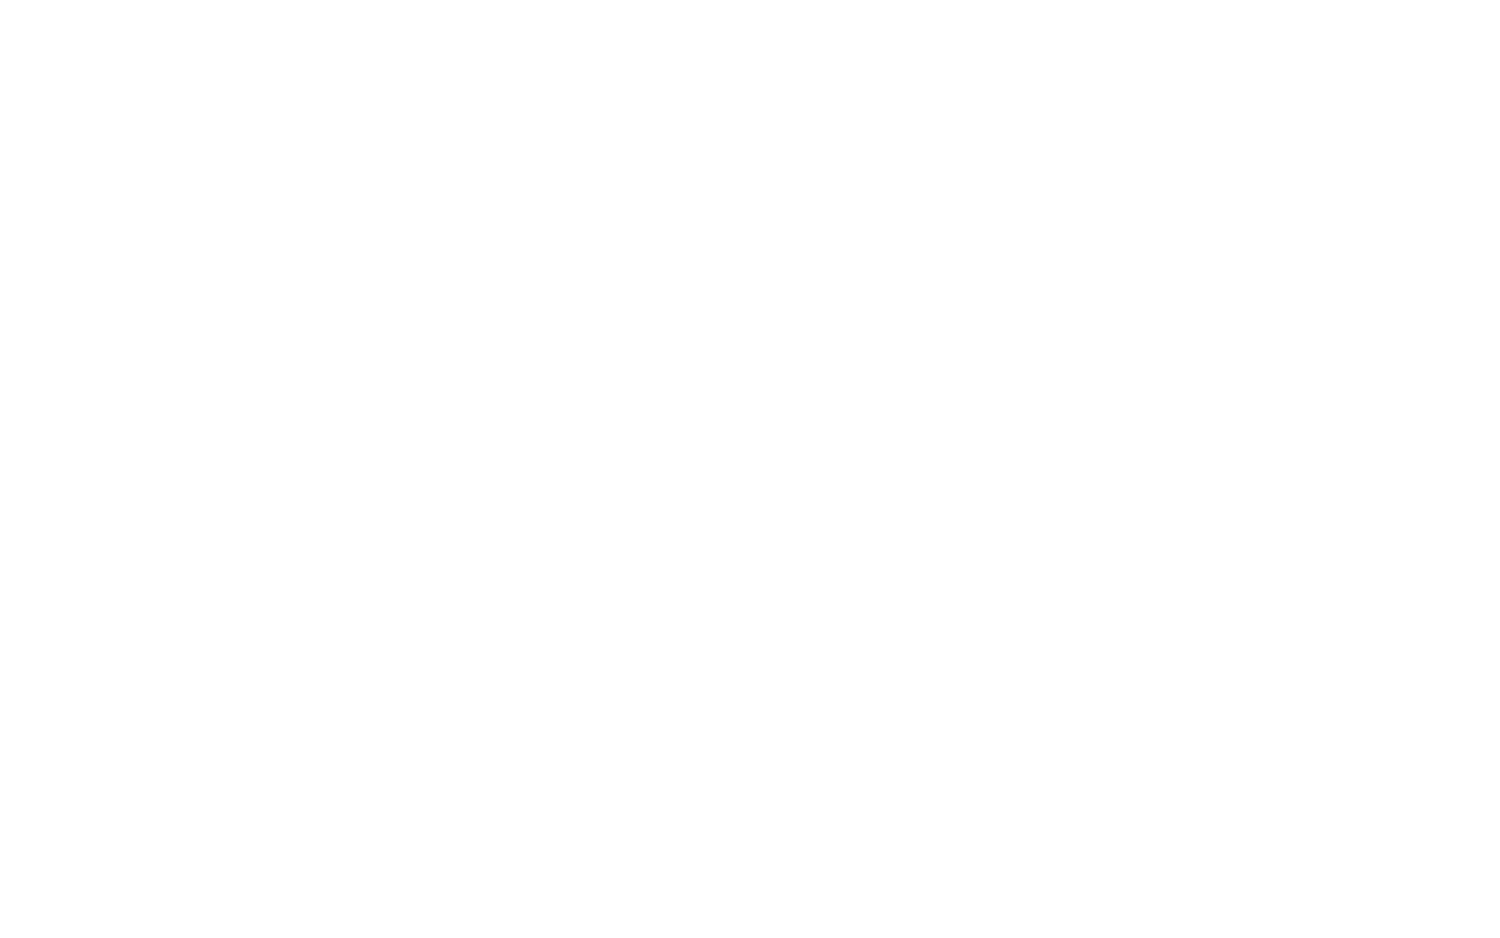 The EDGE